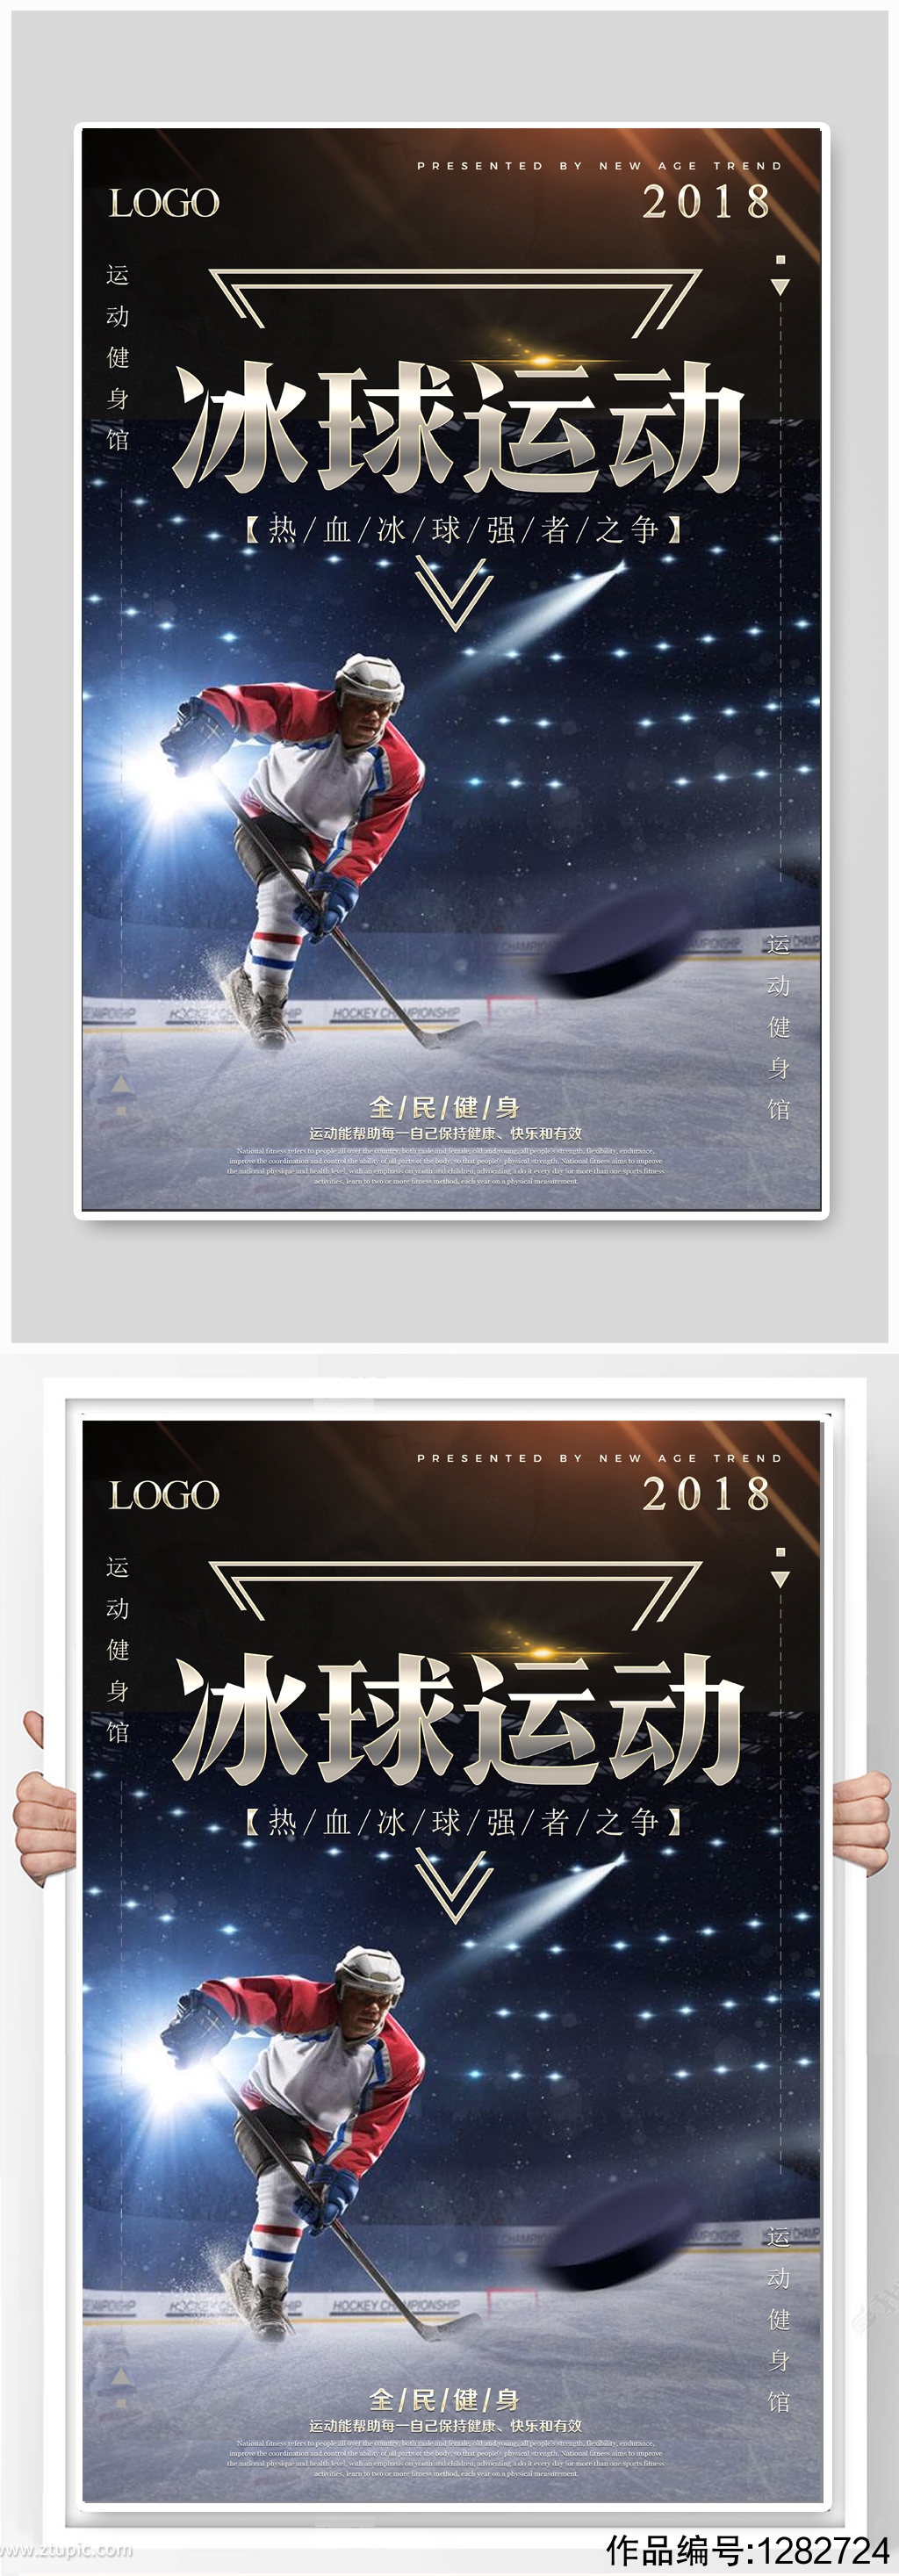 冰球运动体育运动海报